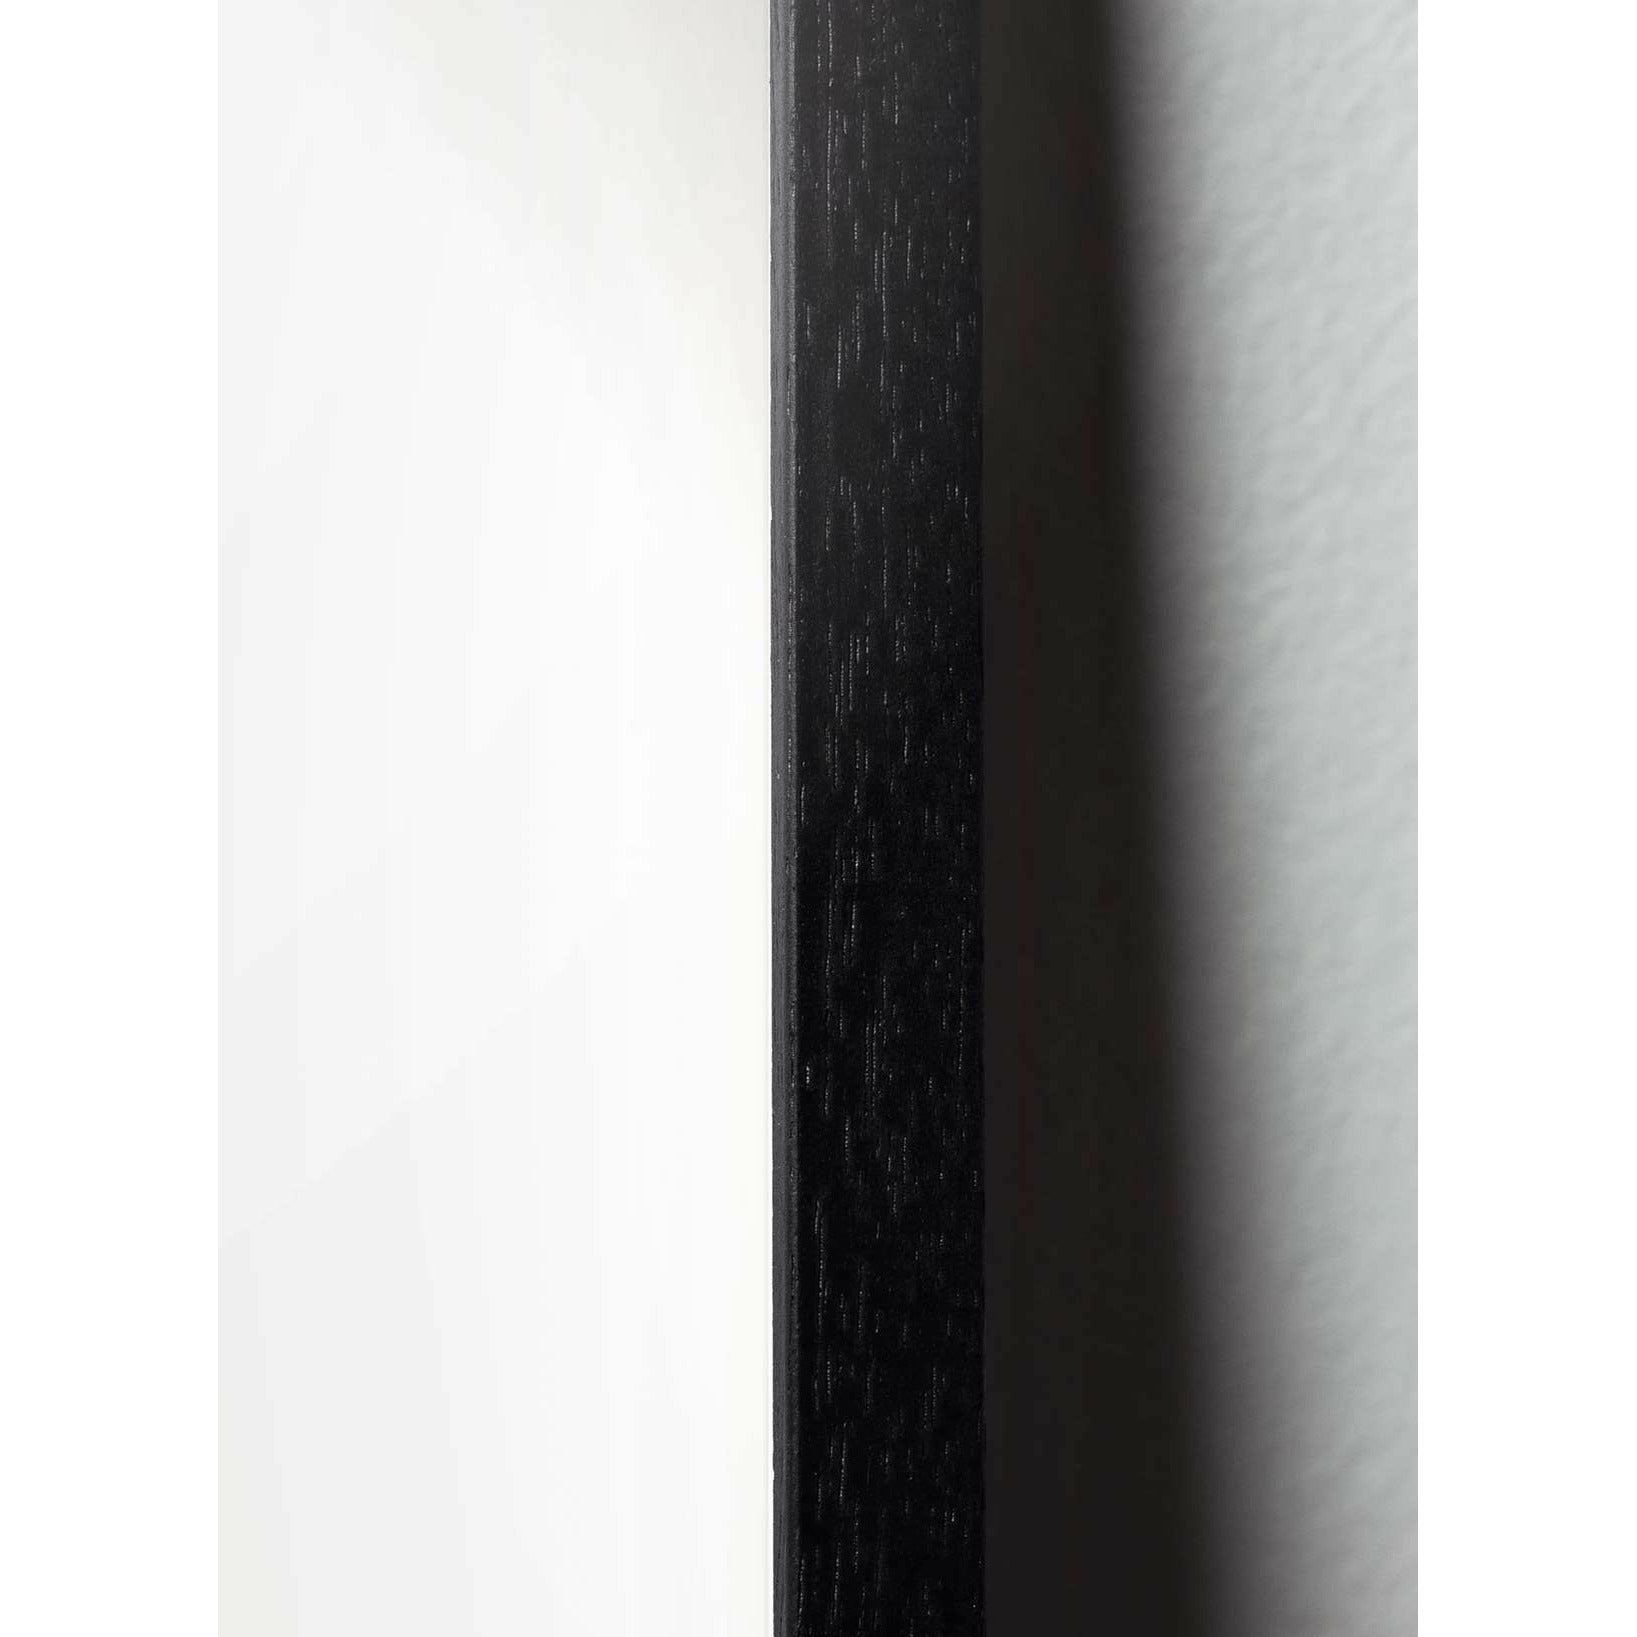 Brainchild Affiche classique de l'ours en peluche, cadre en bois de laquée noir A5, fond de couleur de sable